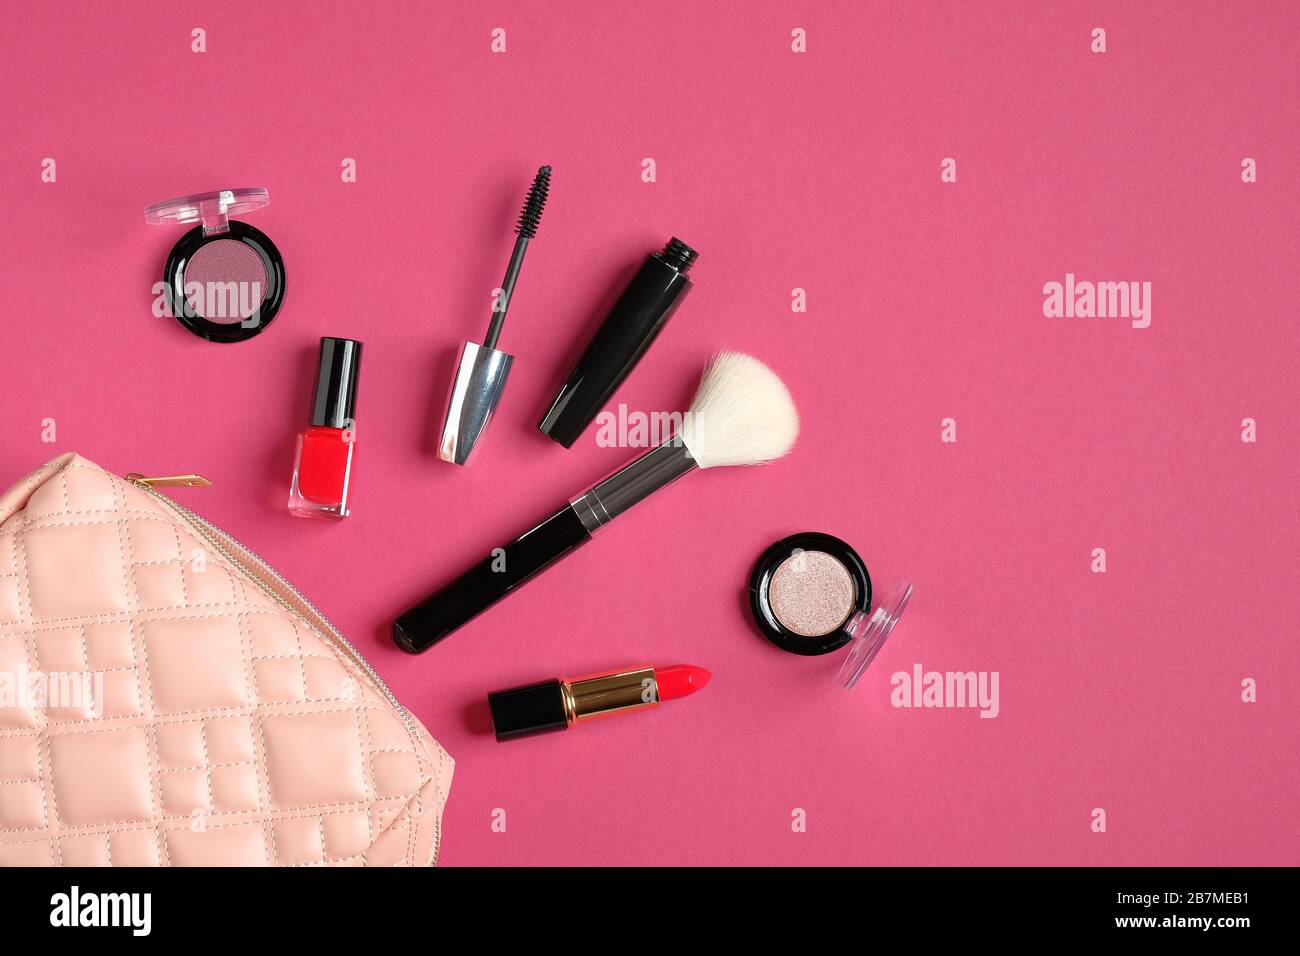 Kosmetikbeutel mit Kosmetikartikeln und professionellen Make-Up-Künstler-Tools auf pinkfarbenem Hintergrund. Flache Lage, Draufsicht. Schönheit und Mode Stockfoto